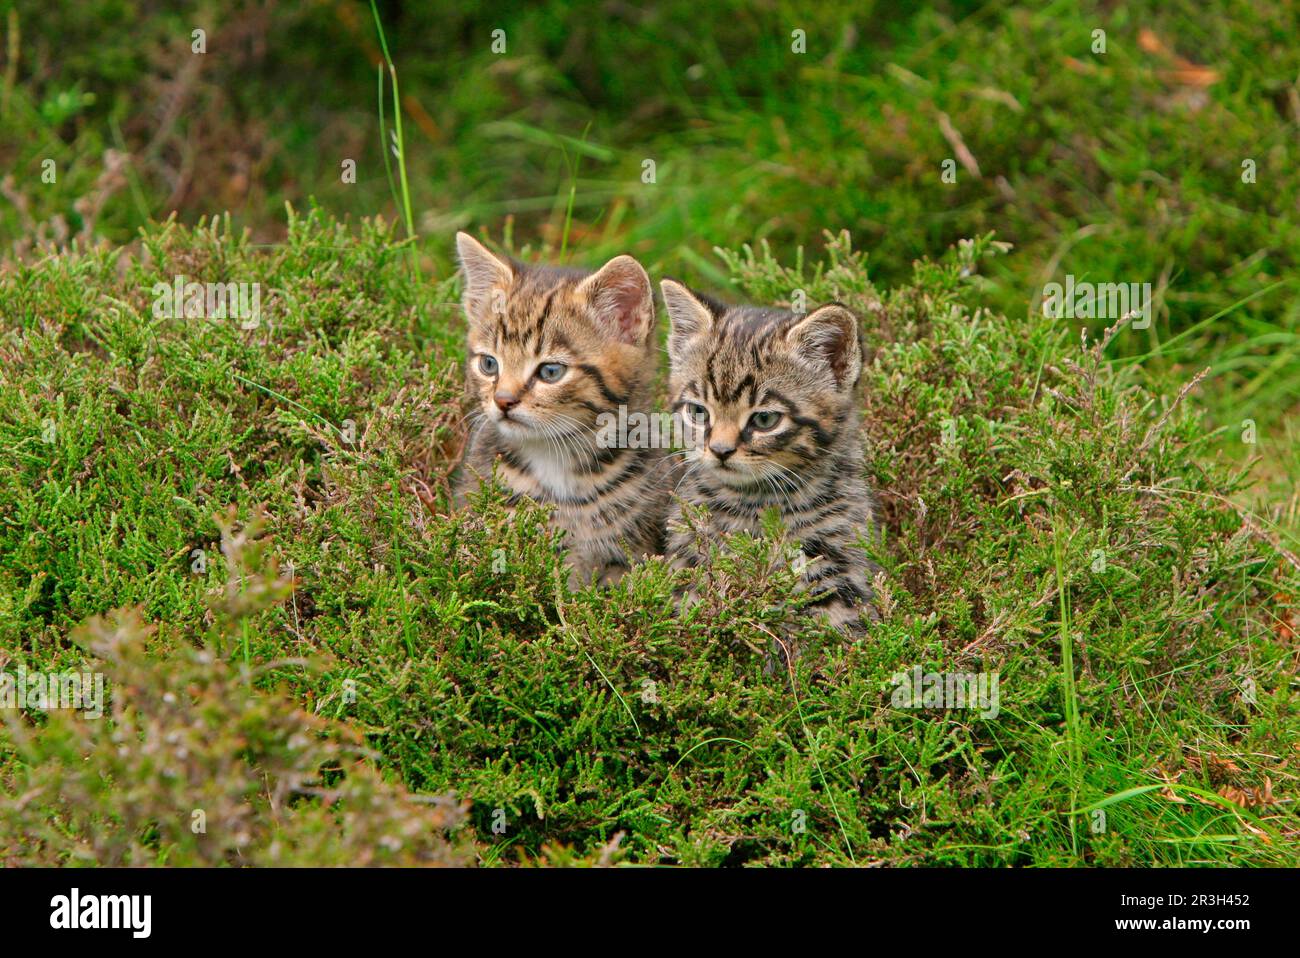 Chat sauvage européen (Felis silvestris) deux chatons, debout dans la bruyère, Écosse, Royaume-Uni Banque D'Images